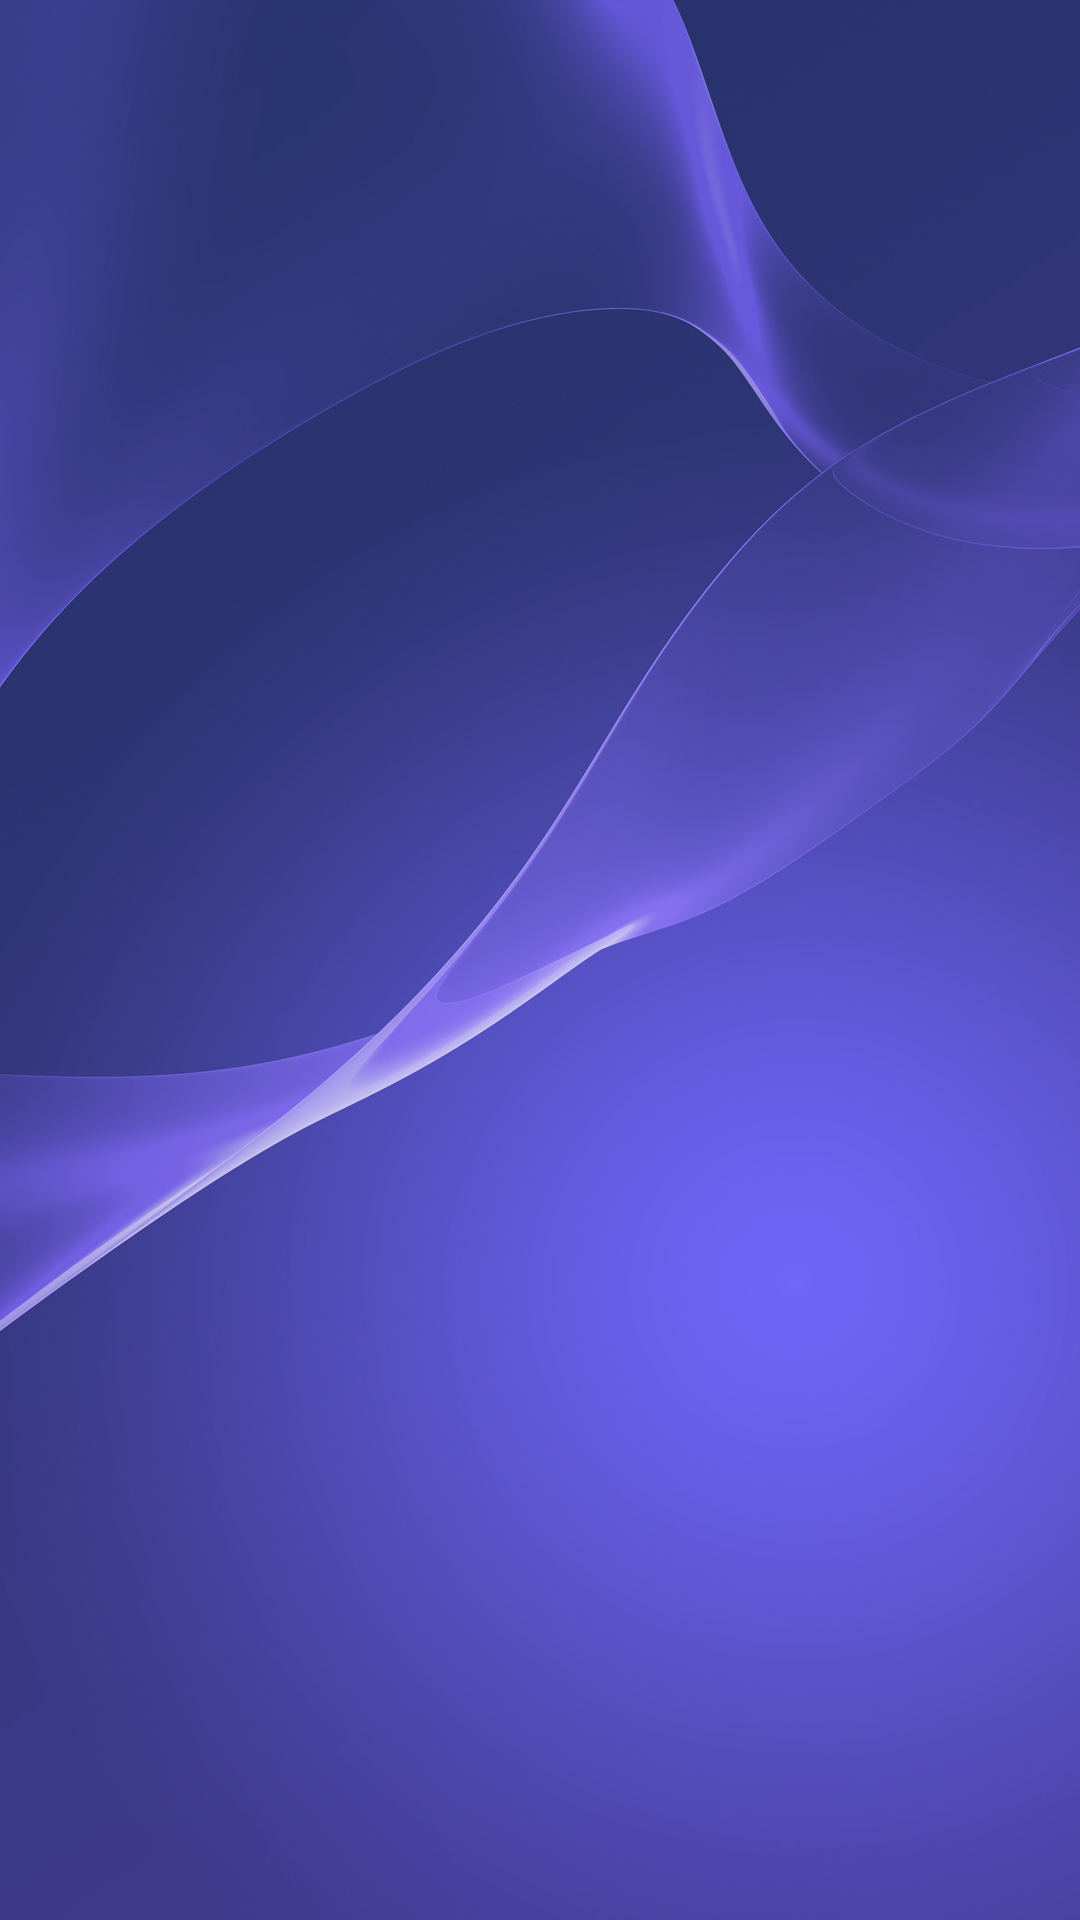 sony xperia壁紙hdモバイル用,青い,バイオレット,紫の,ライラック,エレクトリックブルー